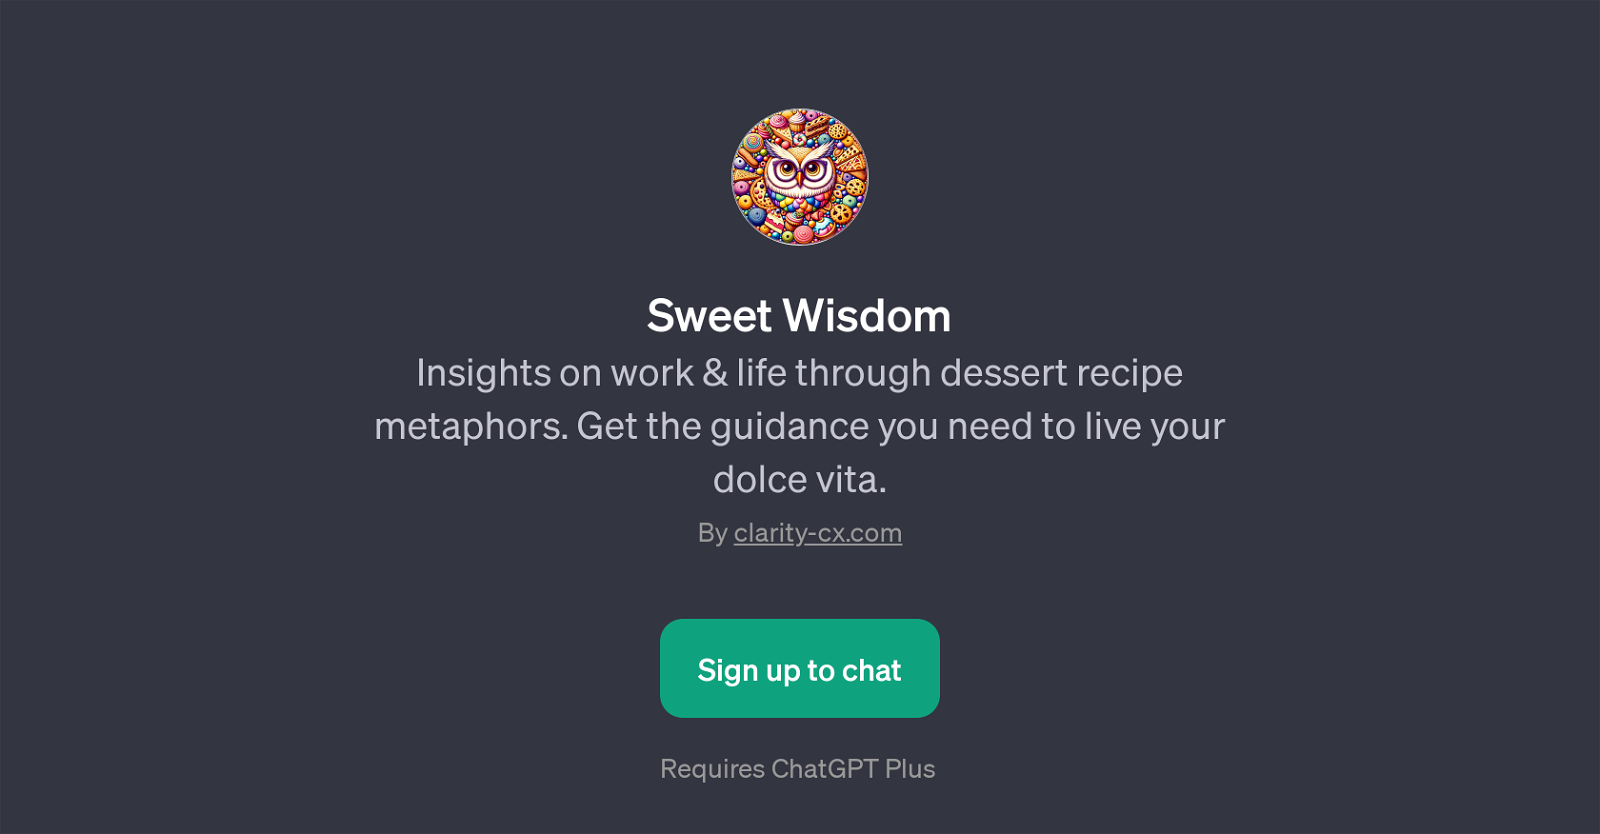 Sweet Wisdom website